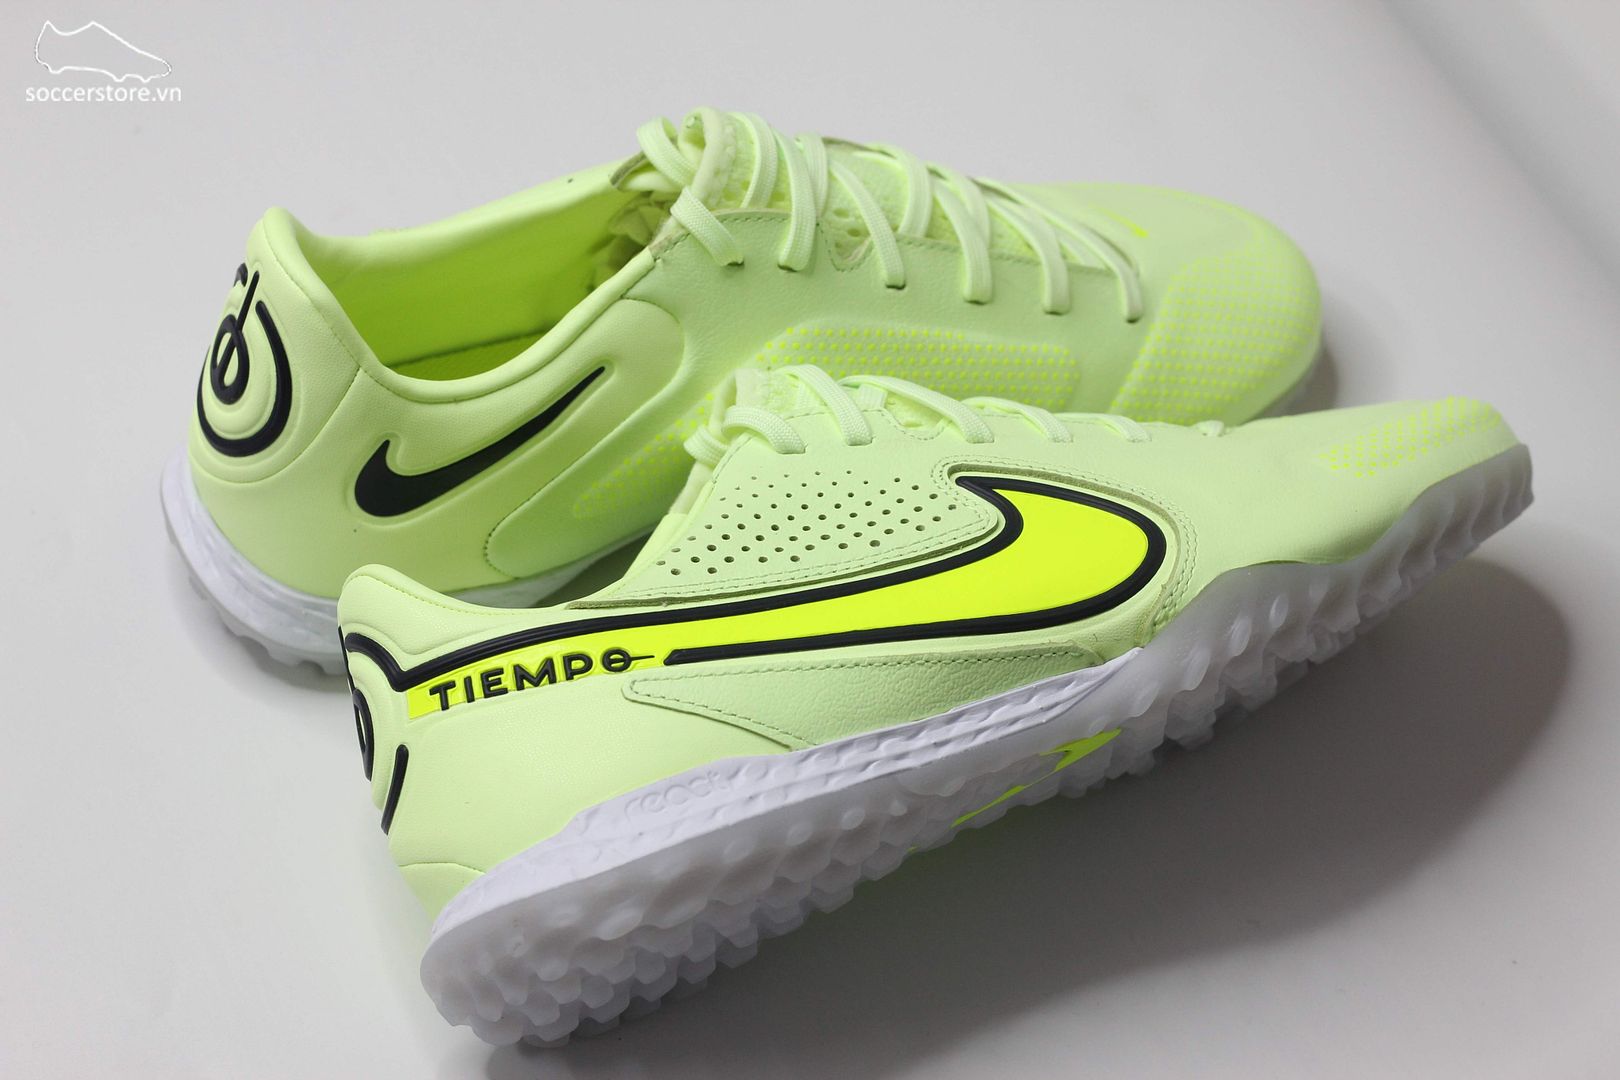 Nike Tiempo Legend 9 Pro TF React - Luminous pack màu xanh lá mạ DA1192-705